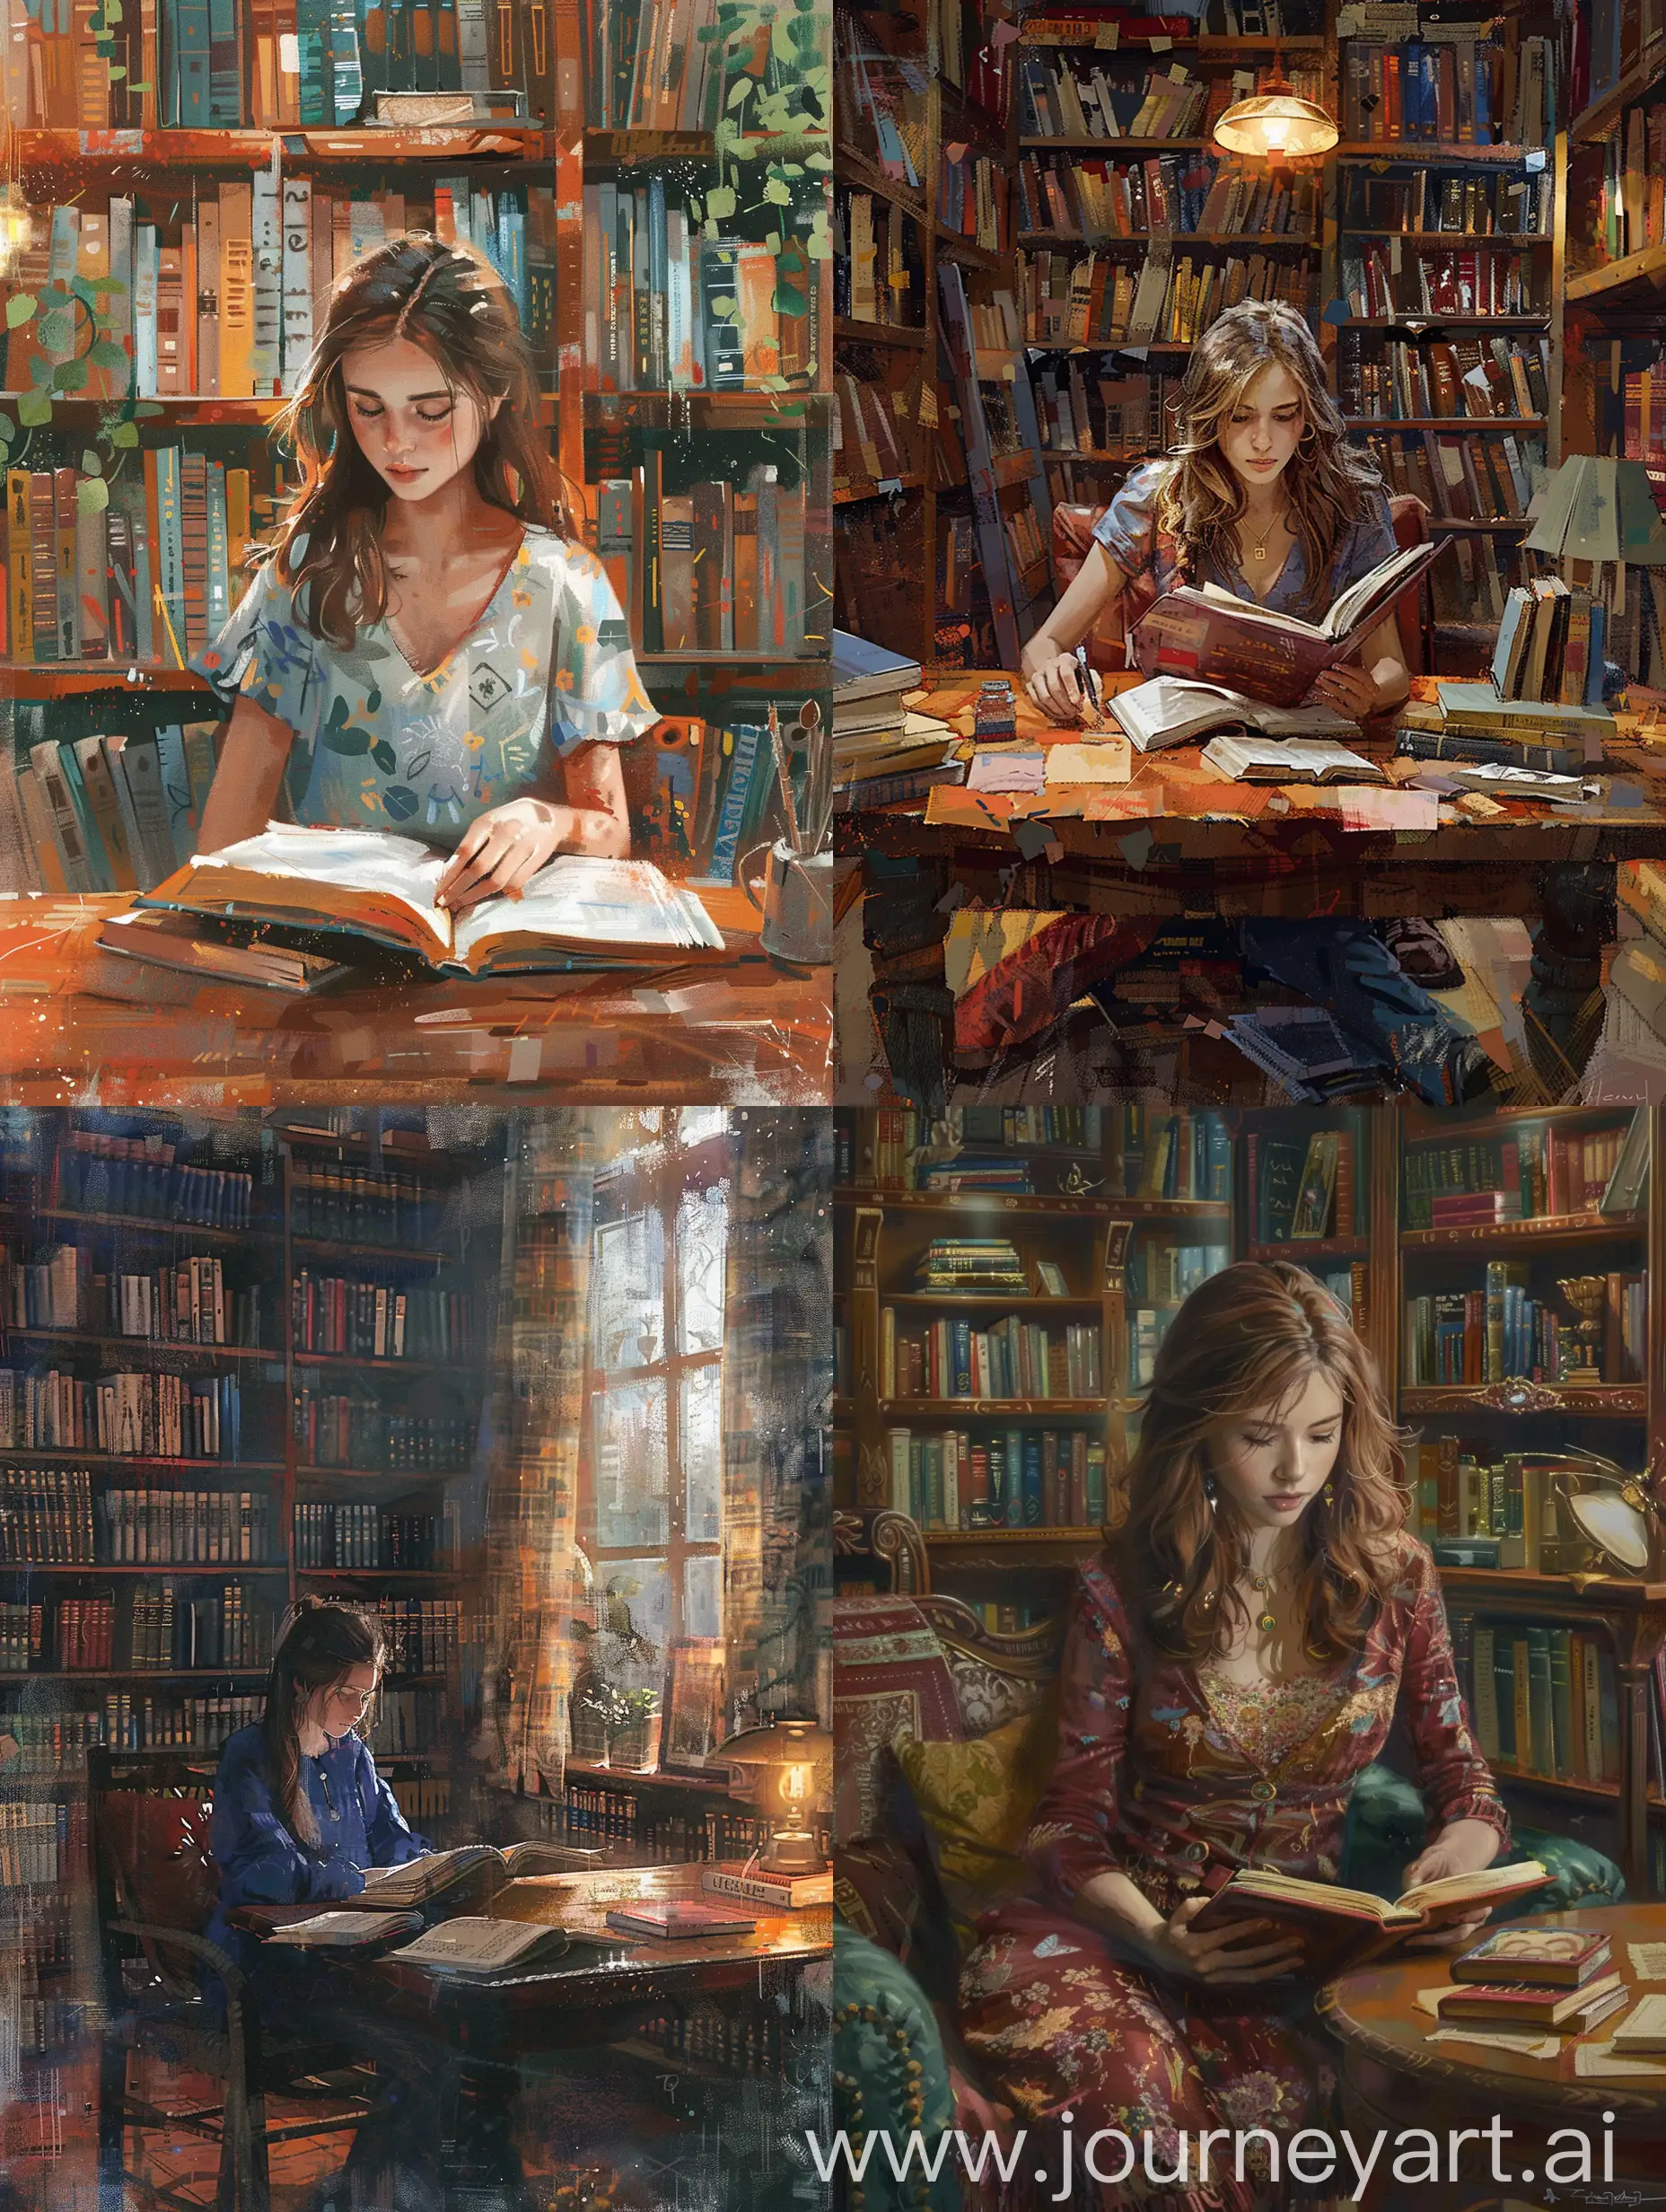 девушка читает, книги на полках, уютный кабинет, стол, арт, библиотека, красивый интерьер,
реализм, эстетика, красивое изображение, иллюстрация,